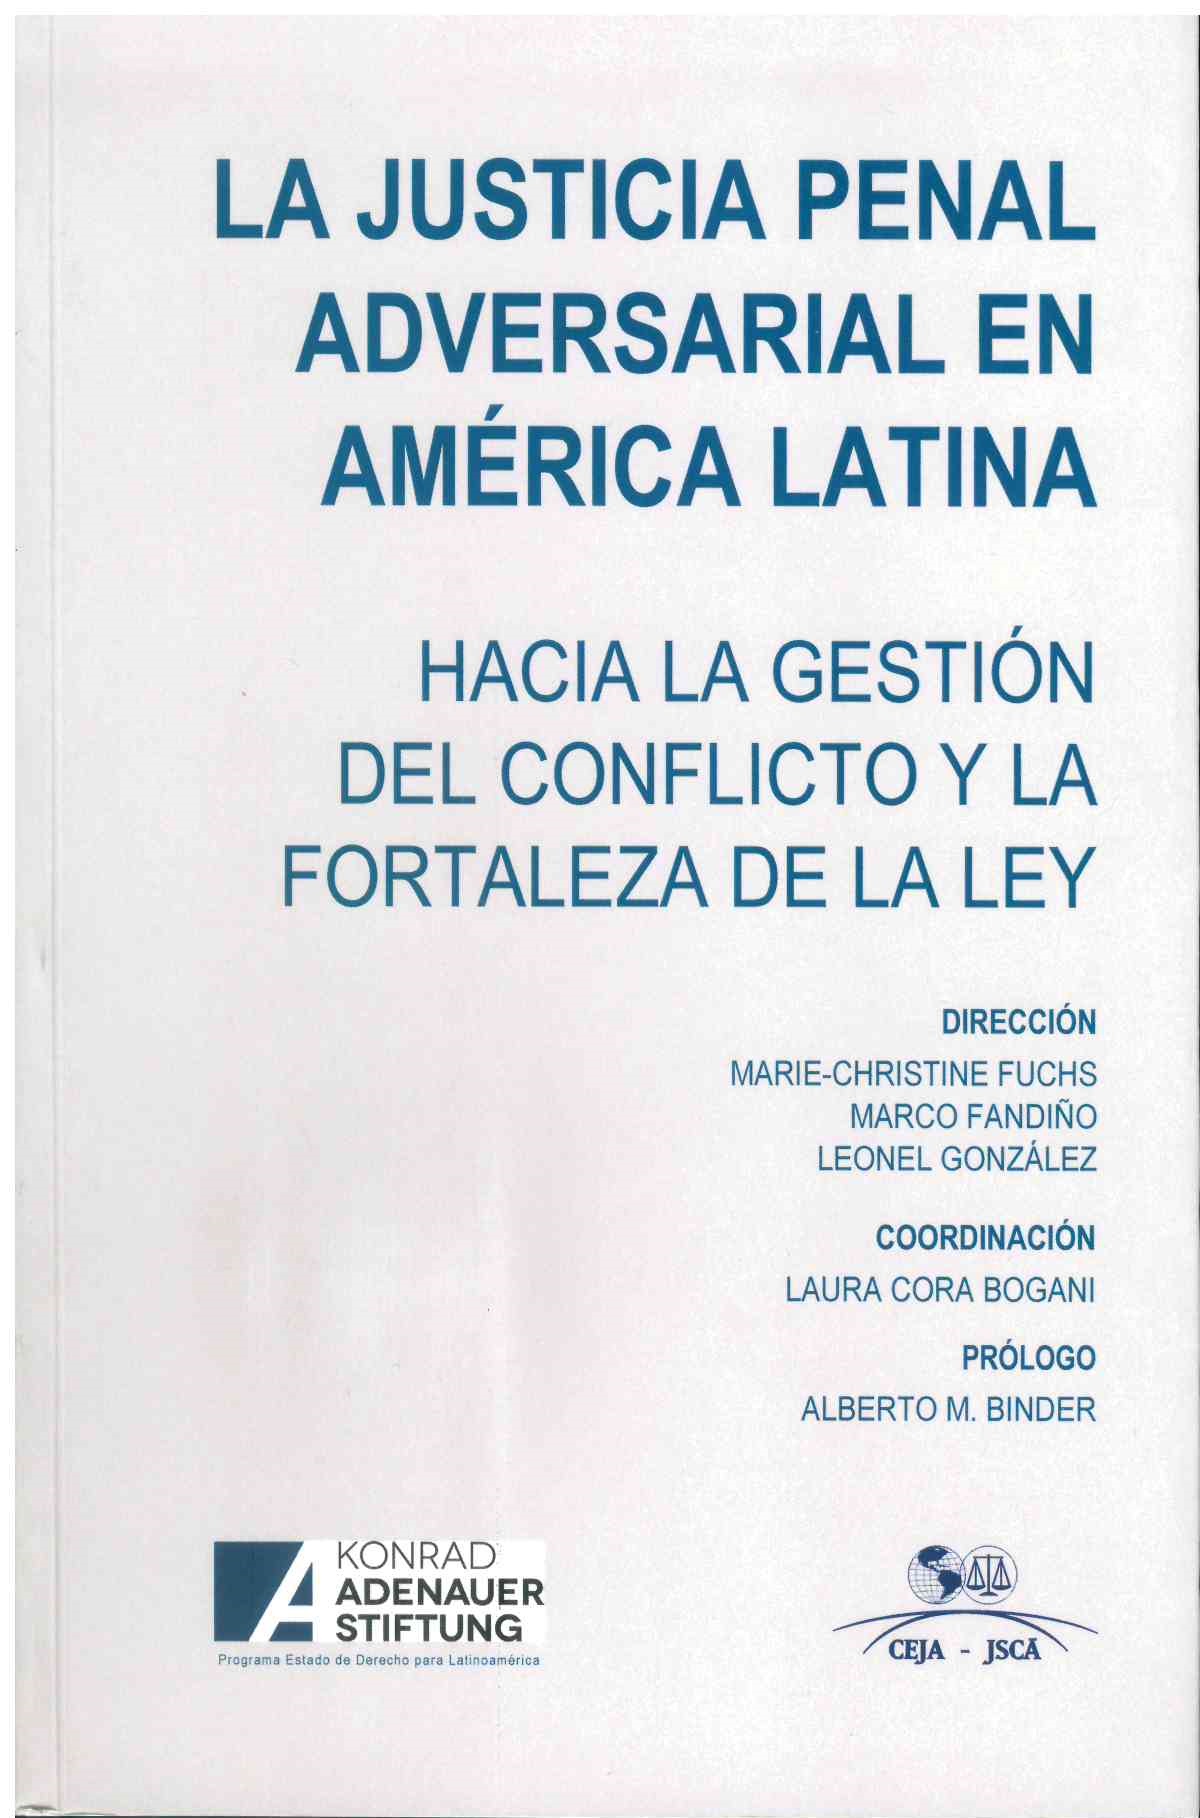 La Justicia Penal Adversarial en América Latina. Hacía la Gestión del conflicto y la fortaleza de la ley